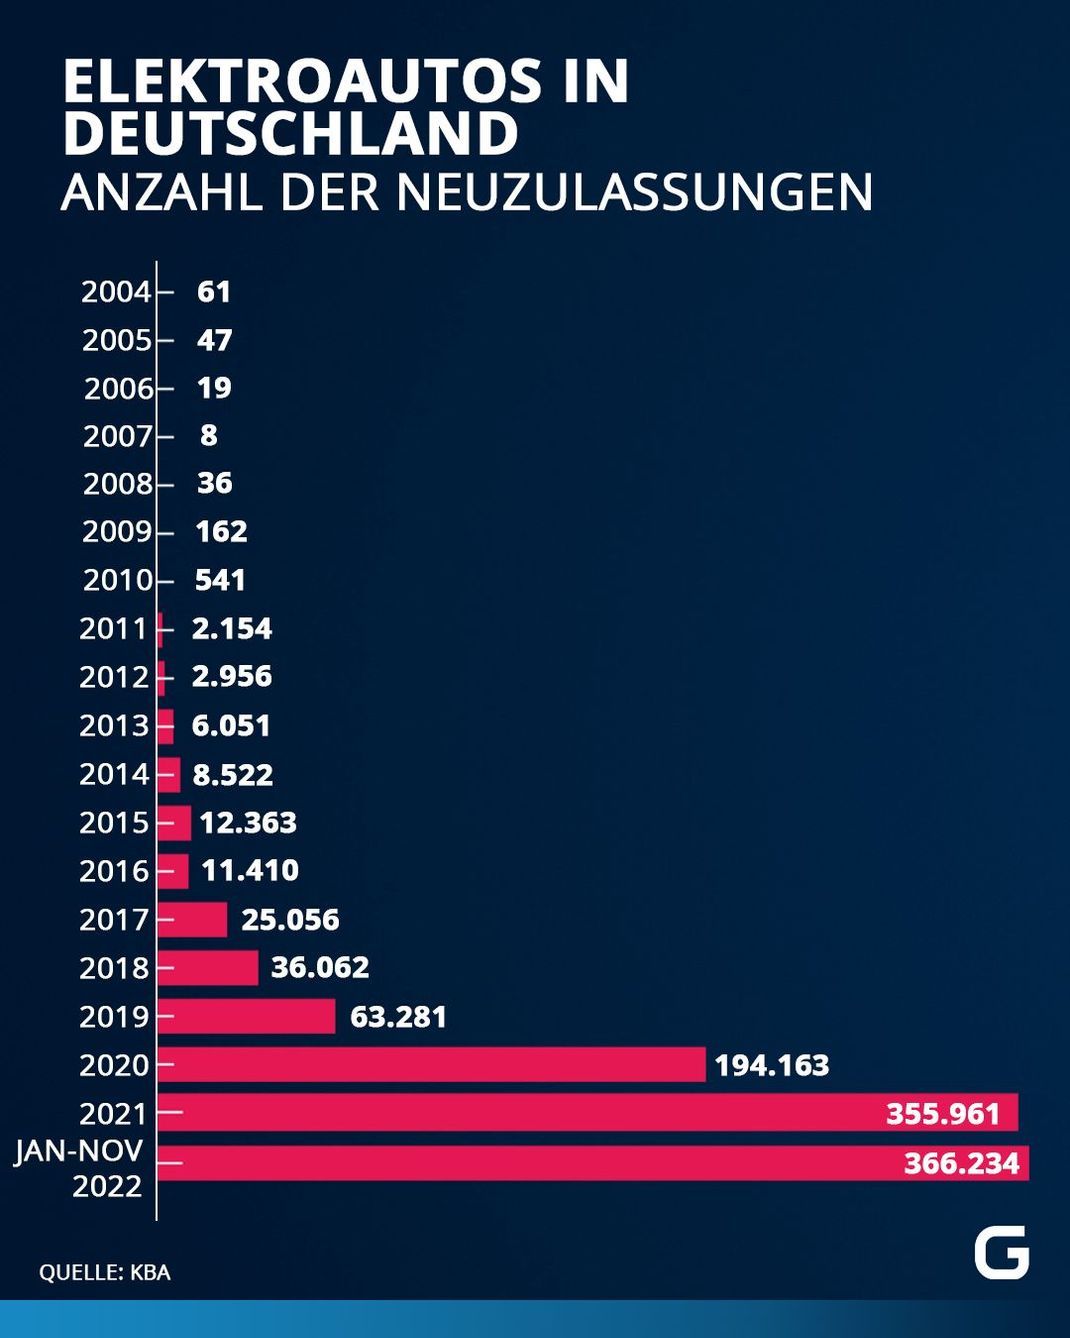 Anzahl der neu zugelassenen Elektroautos in Deutschland in den letzten Jahren